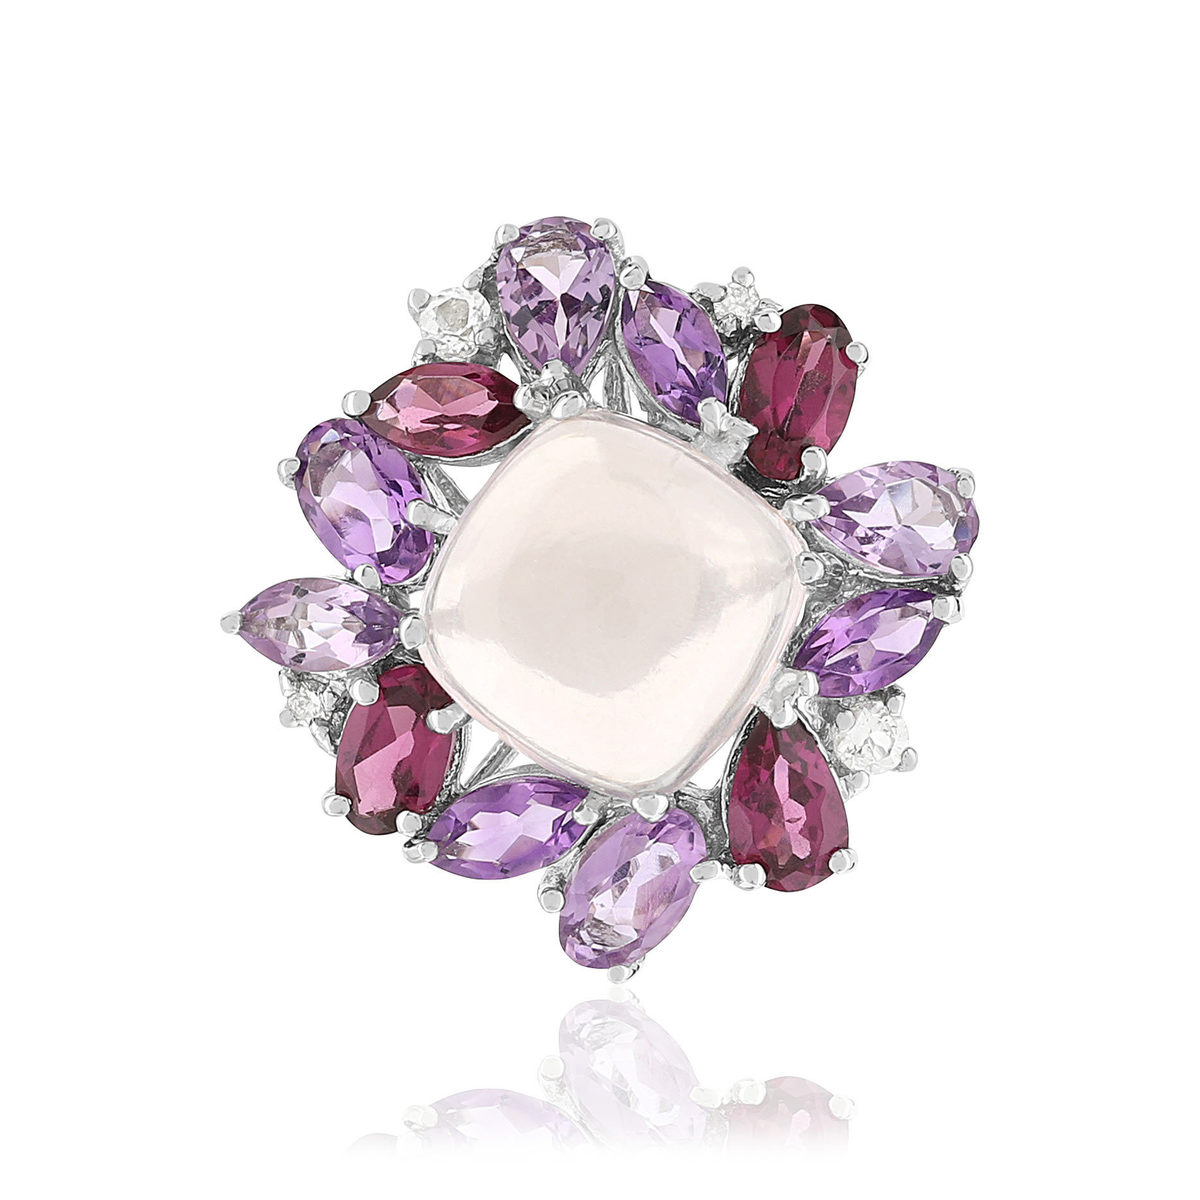 Bague or 750 blanc fleur quartz rose et pierres fines - vue 3